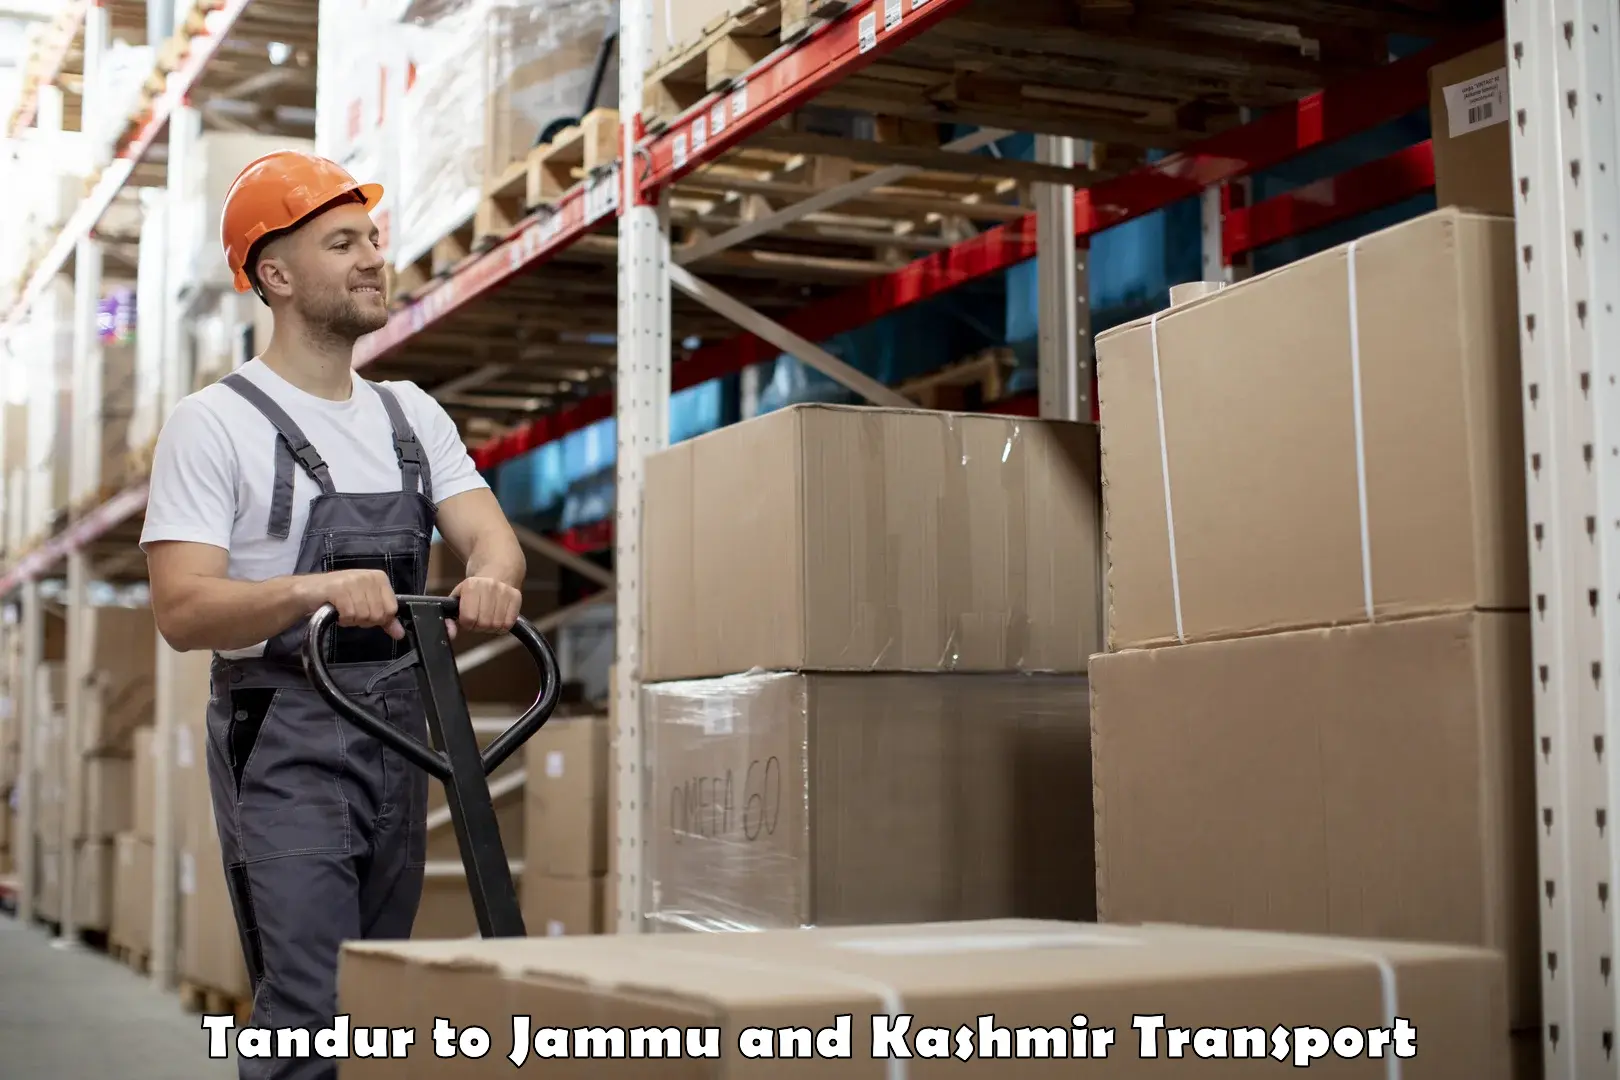 Daily transport service Tandur to Jammu and Kashmir